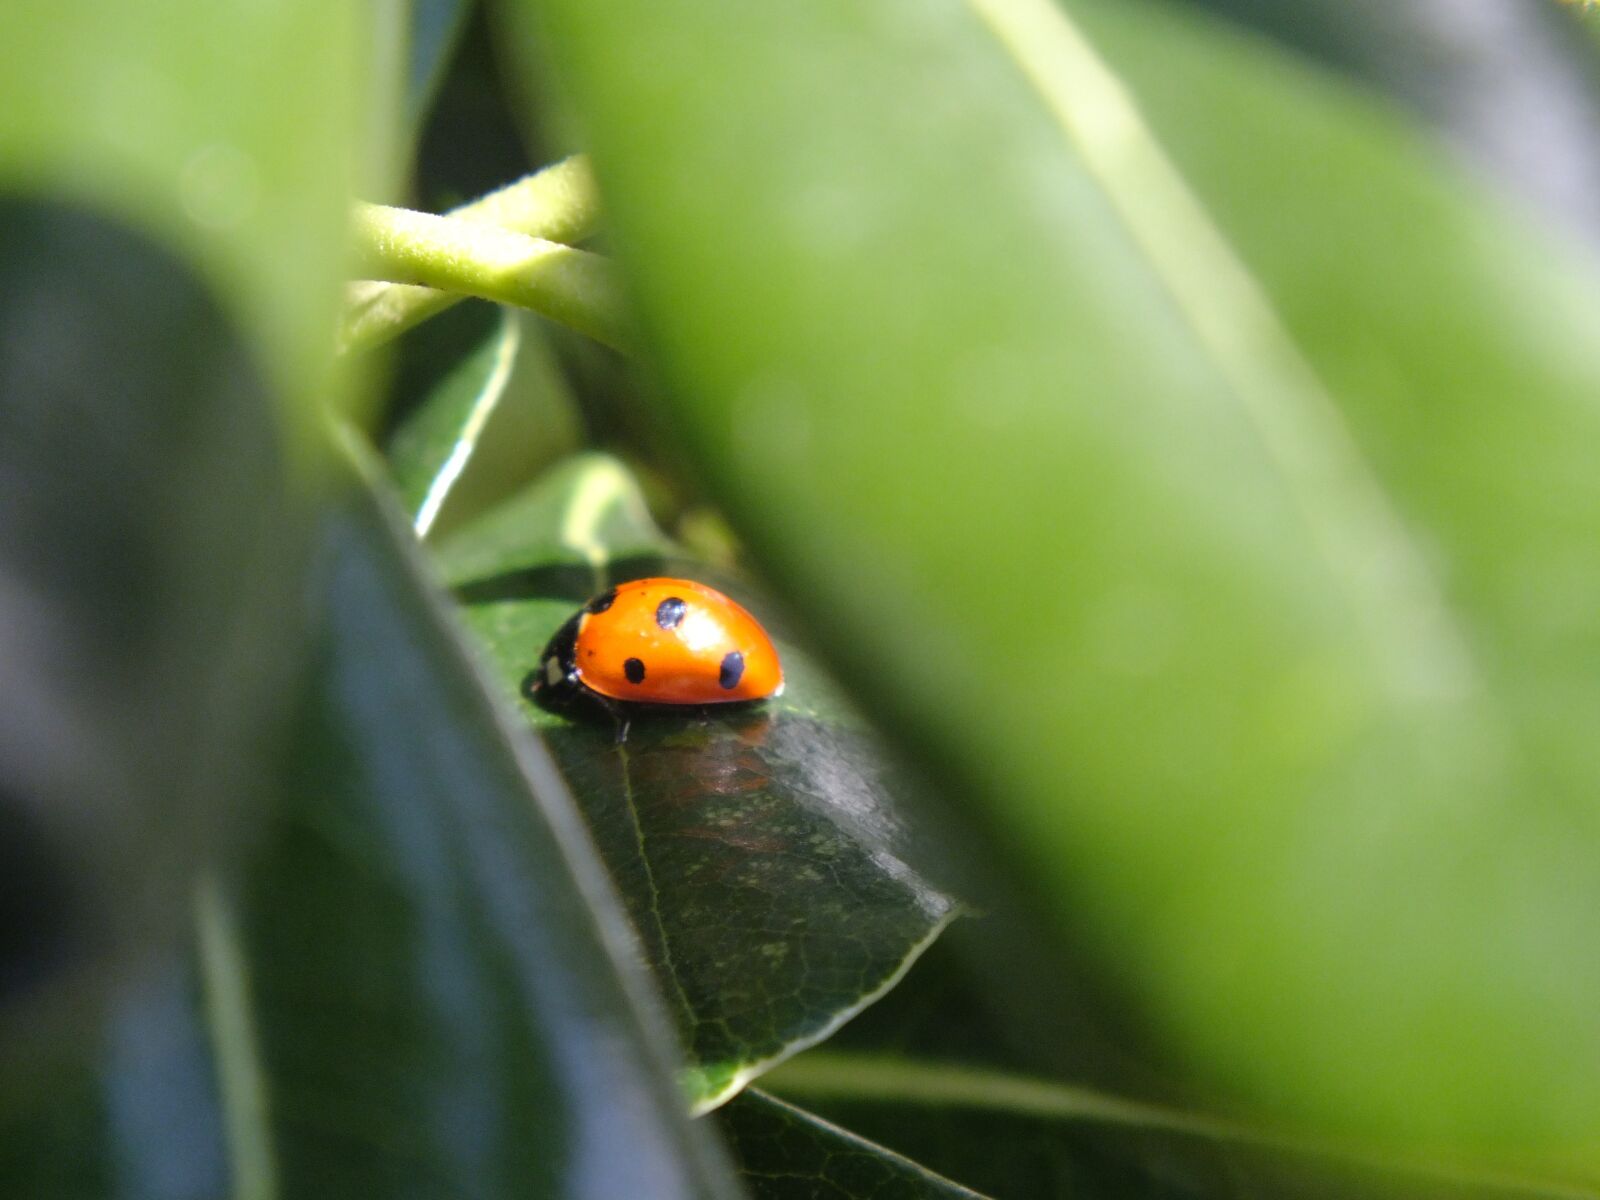 Fujifilm FinePix HS20EXR sample photo. Ladybug, leaves, nature photography